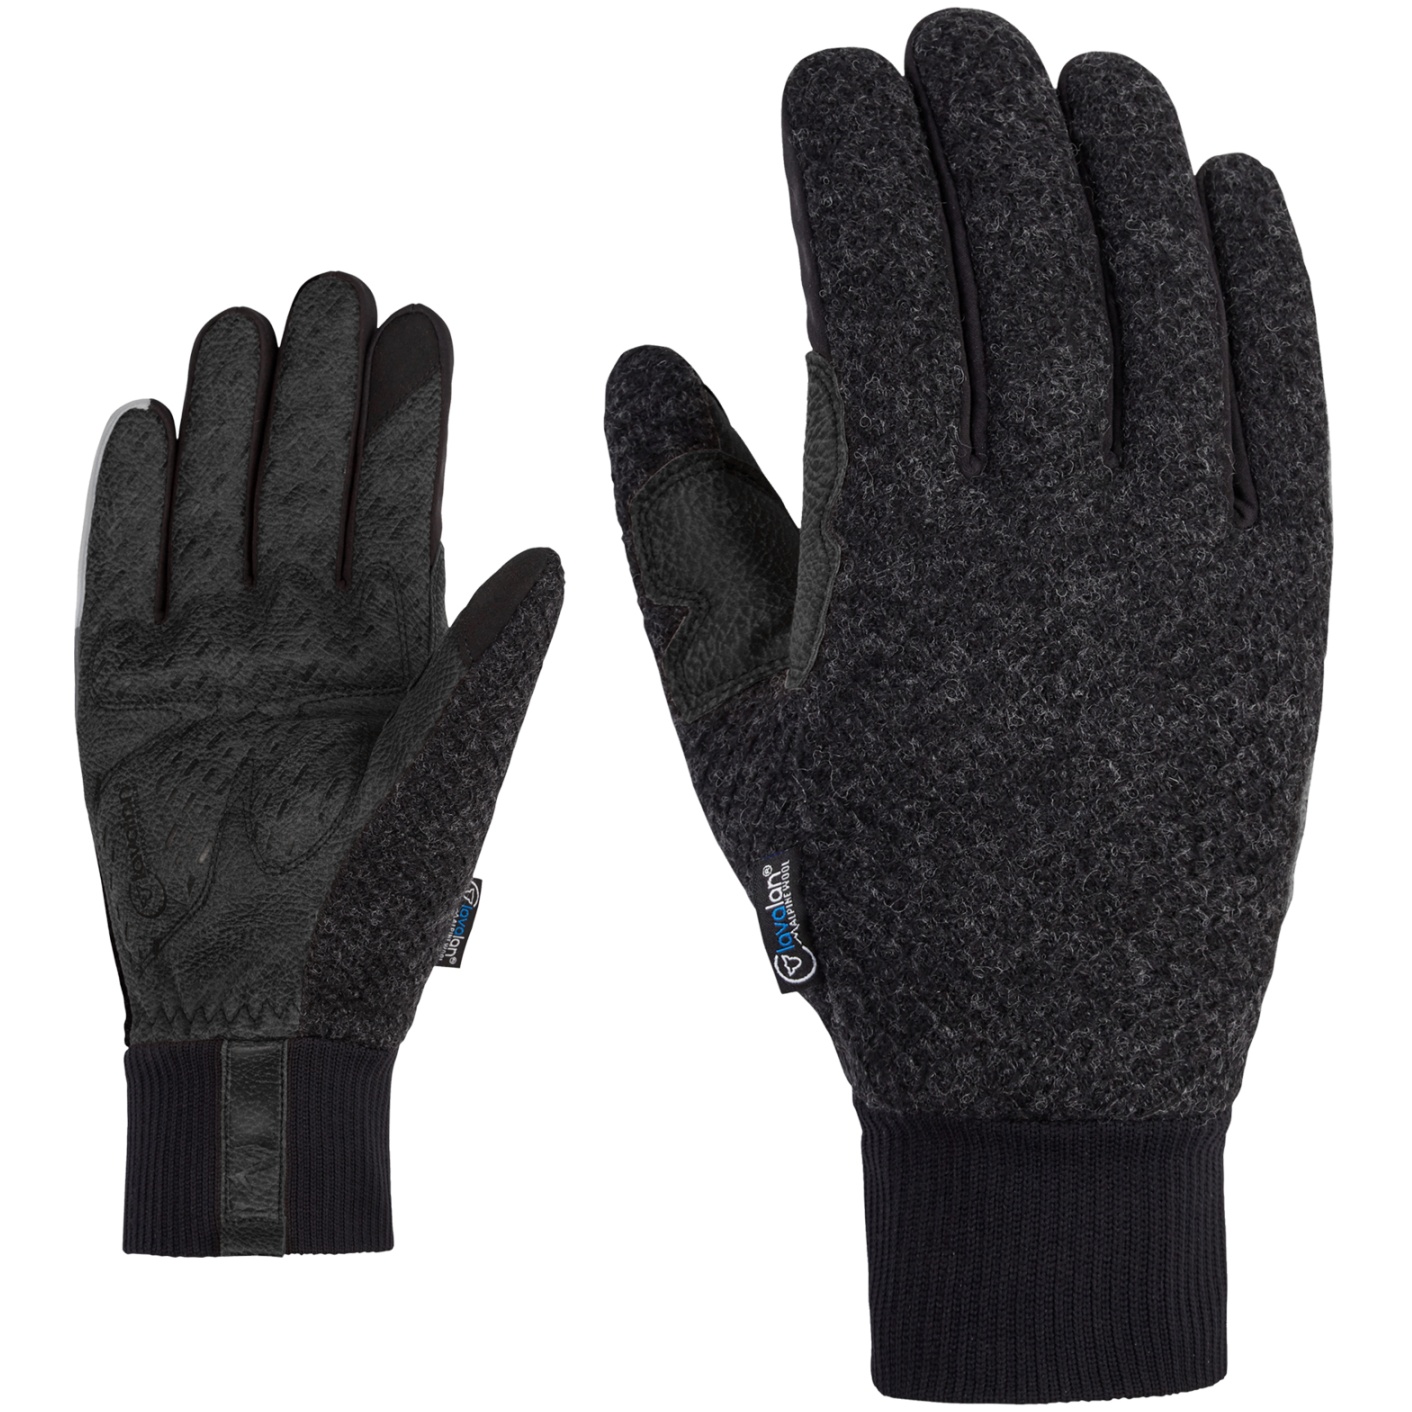 Productfoto van Ziener Dagh Aw Touch Fietshandschoenen - zwart